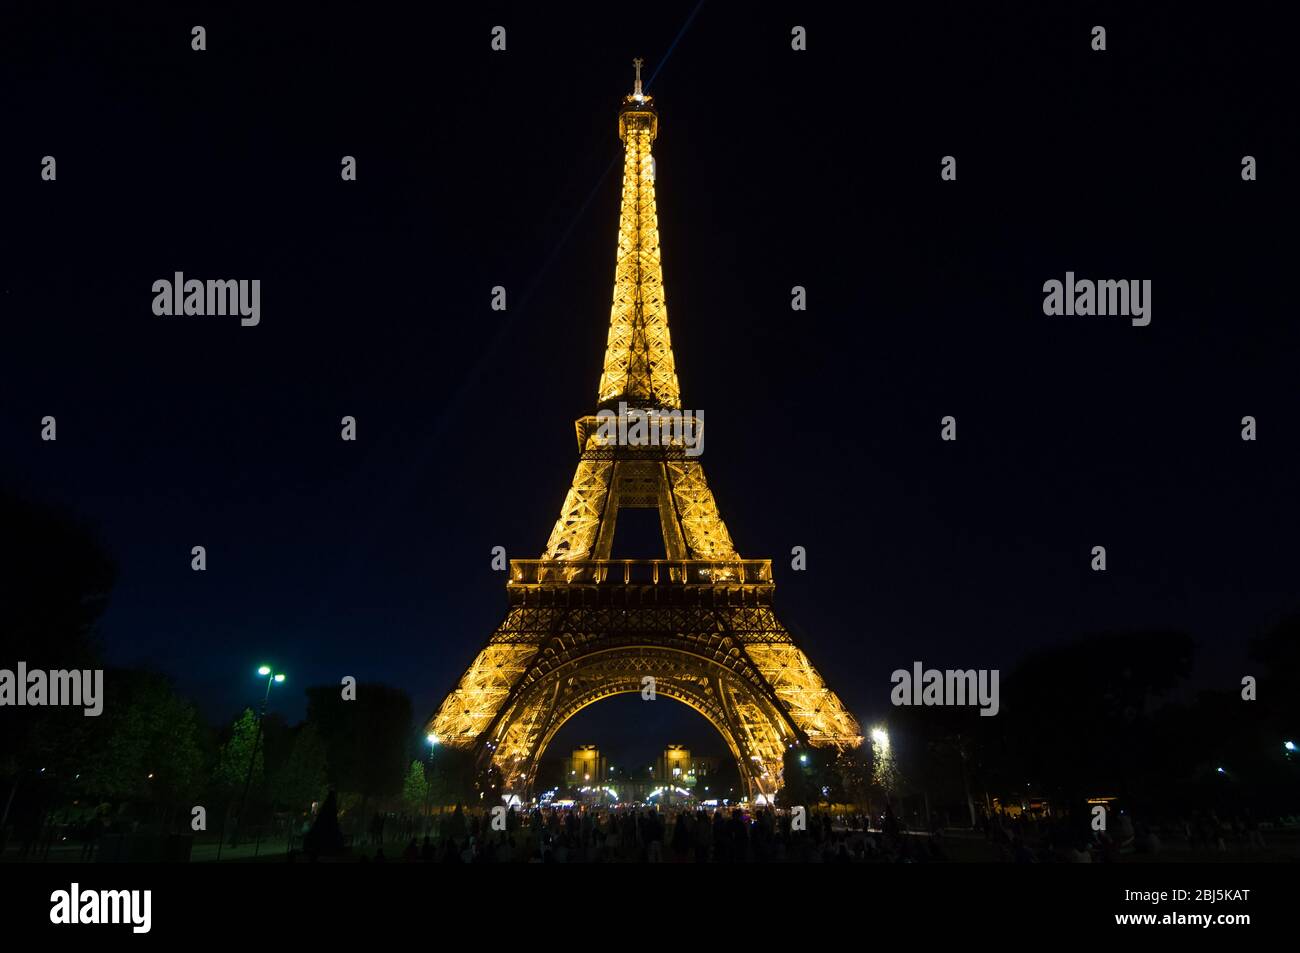 PARIS - 16 SEPTEMBRE 2014 : spectacle de lumière de la Tour Eiffel au crépuscule. La tour Eiffel est l'un des monuments les plus visités au monde. Situé sur le Banque D'Images